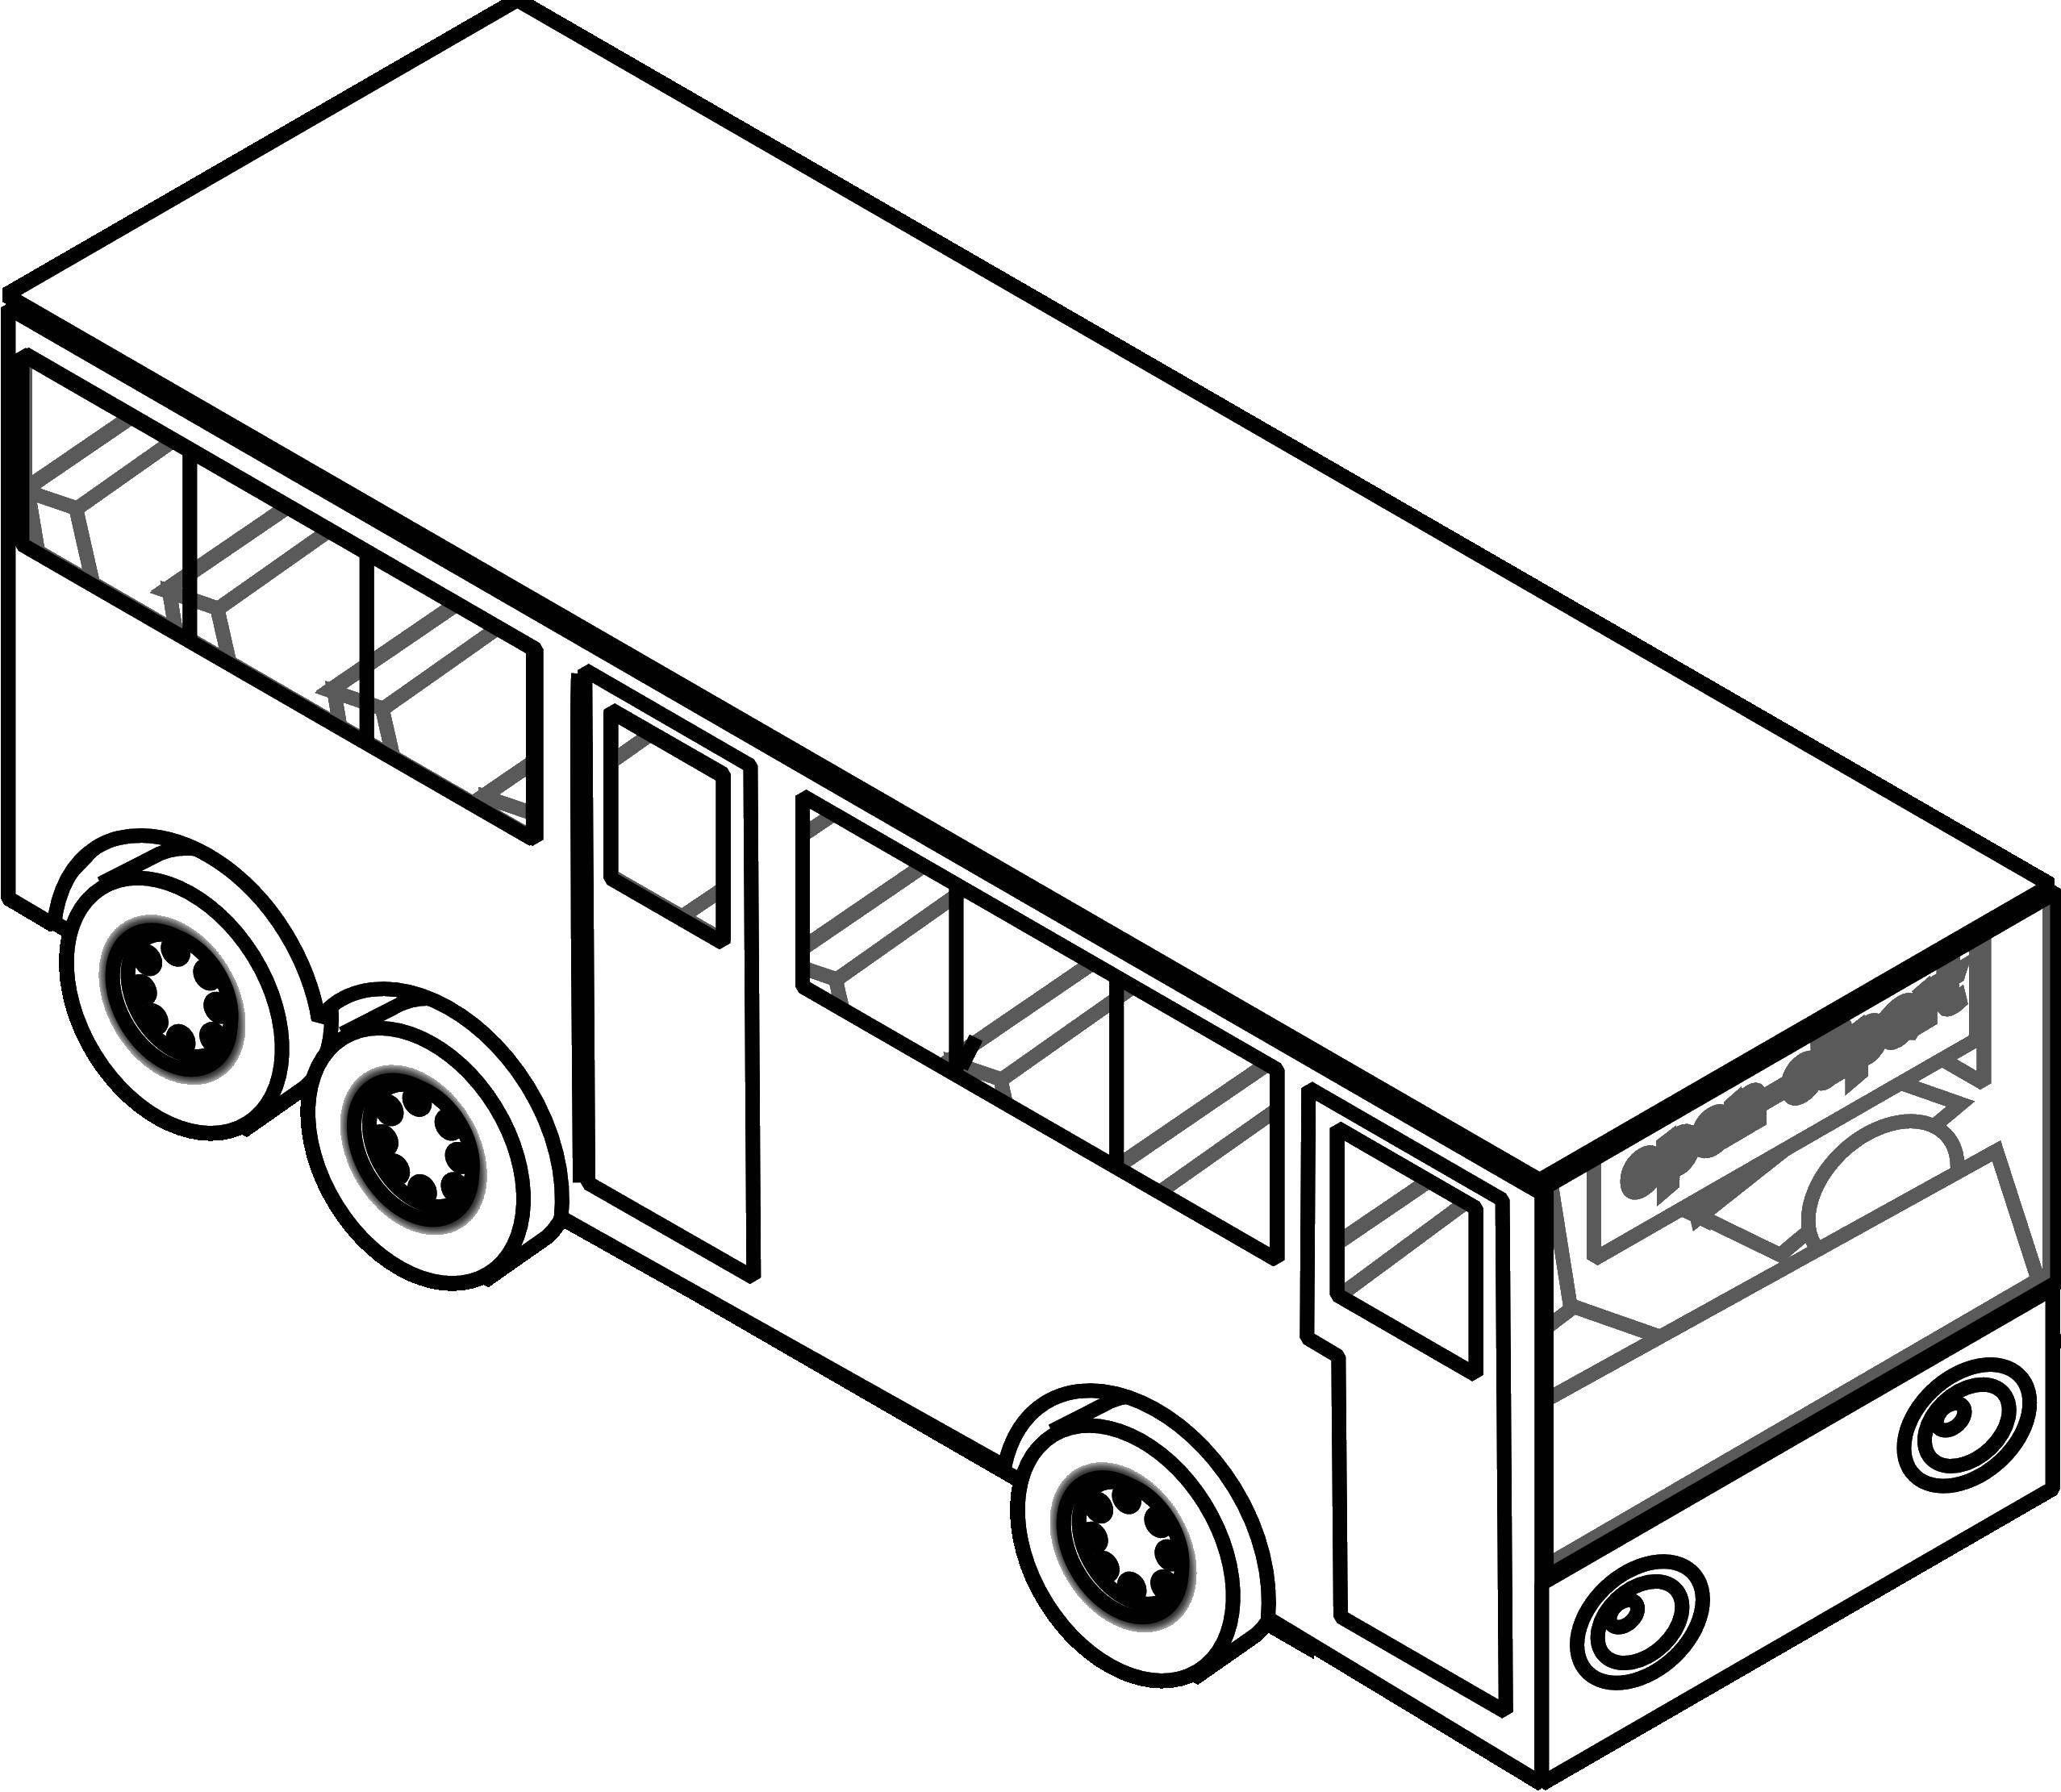 Название: Раскраска Автобус. Категория: транспорт. Теги: общественный транспорт, автобусы.